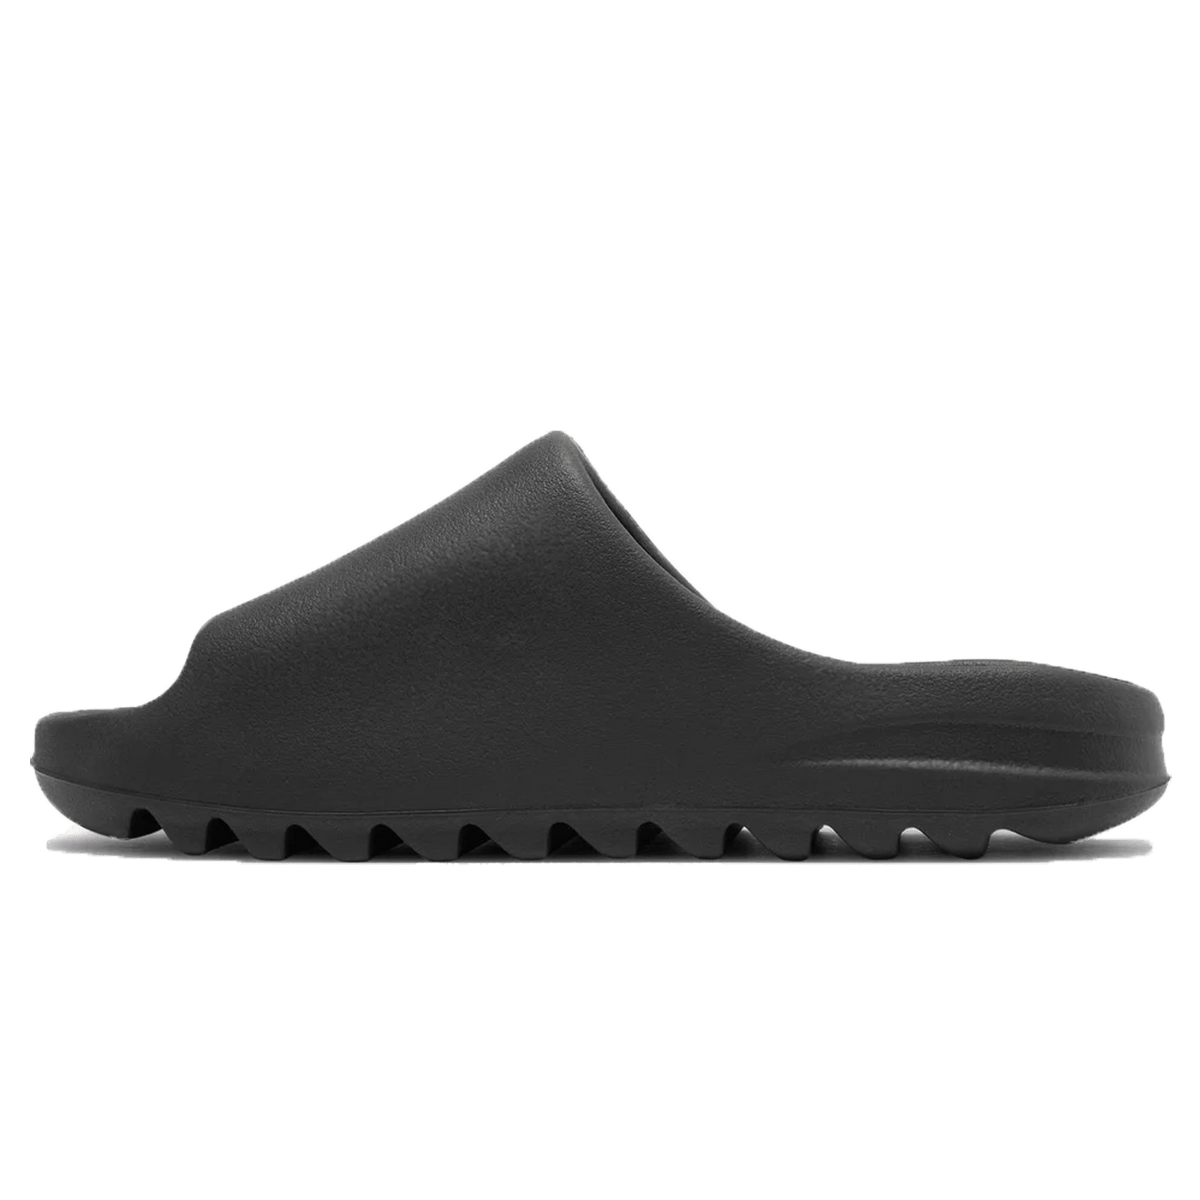 adidas Yeezy Slide 'Onyx' - Kick Game